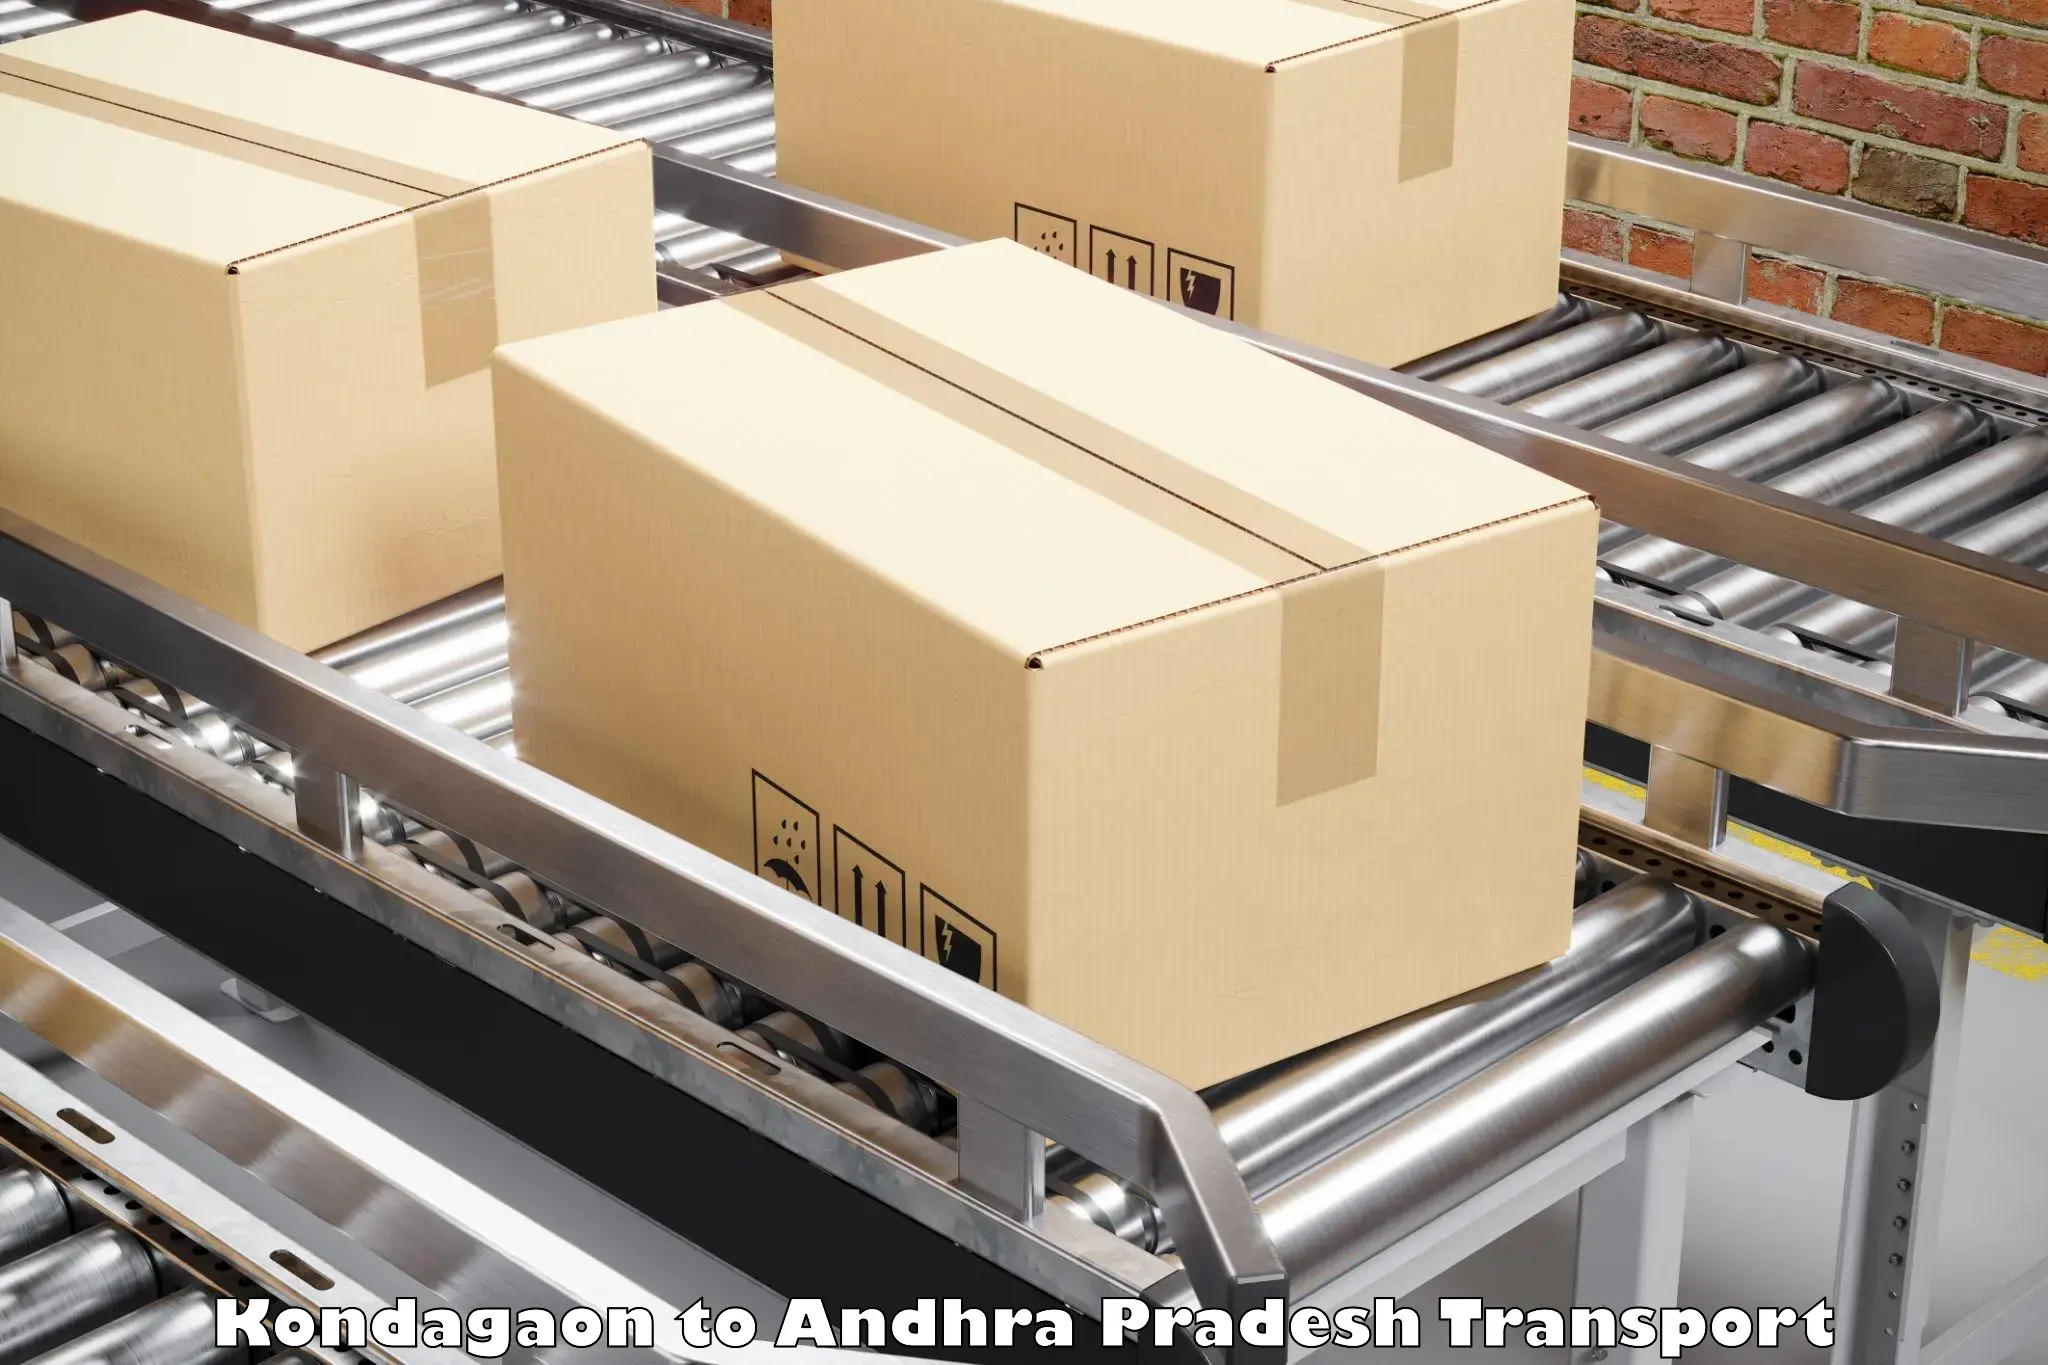 Interstate goods transport in Kondagaon to Andhra Pradesh